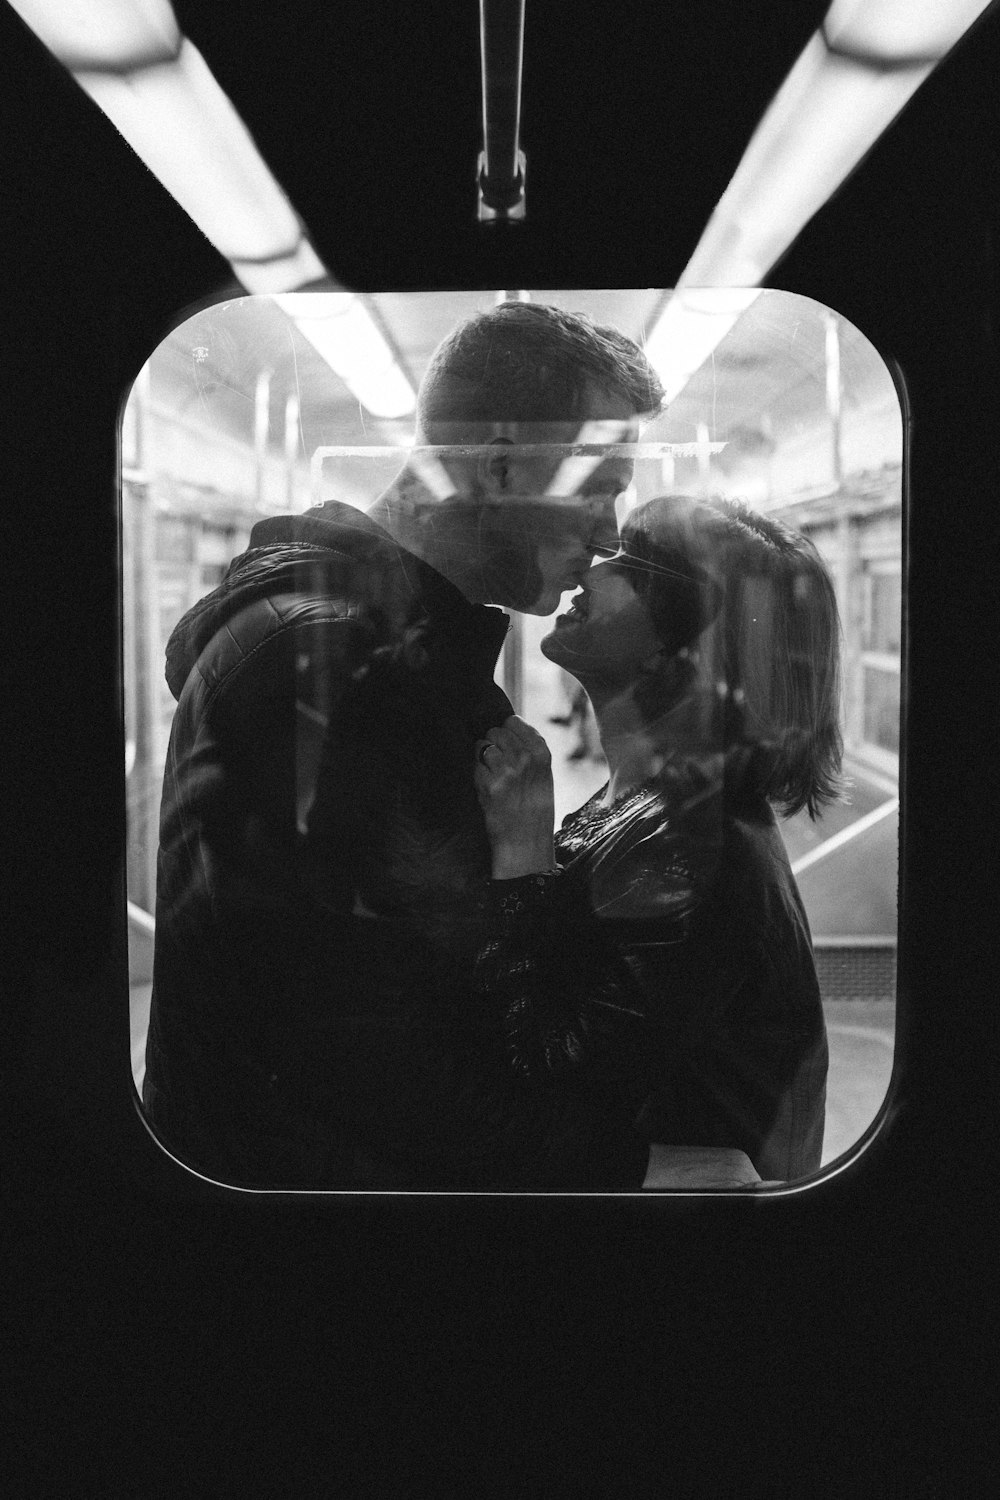 회색조 사진에서 창가에 서 있는 커플